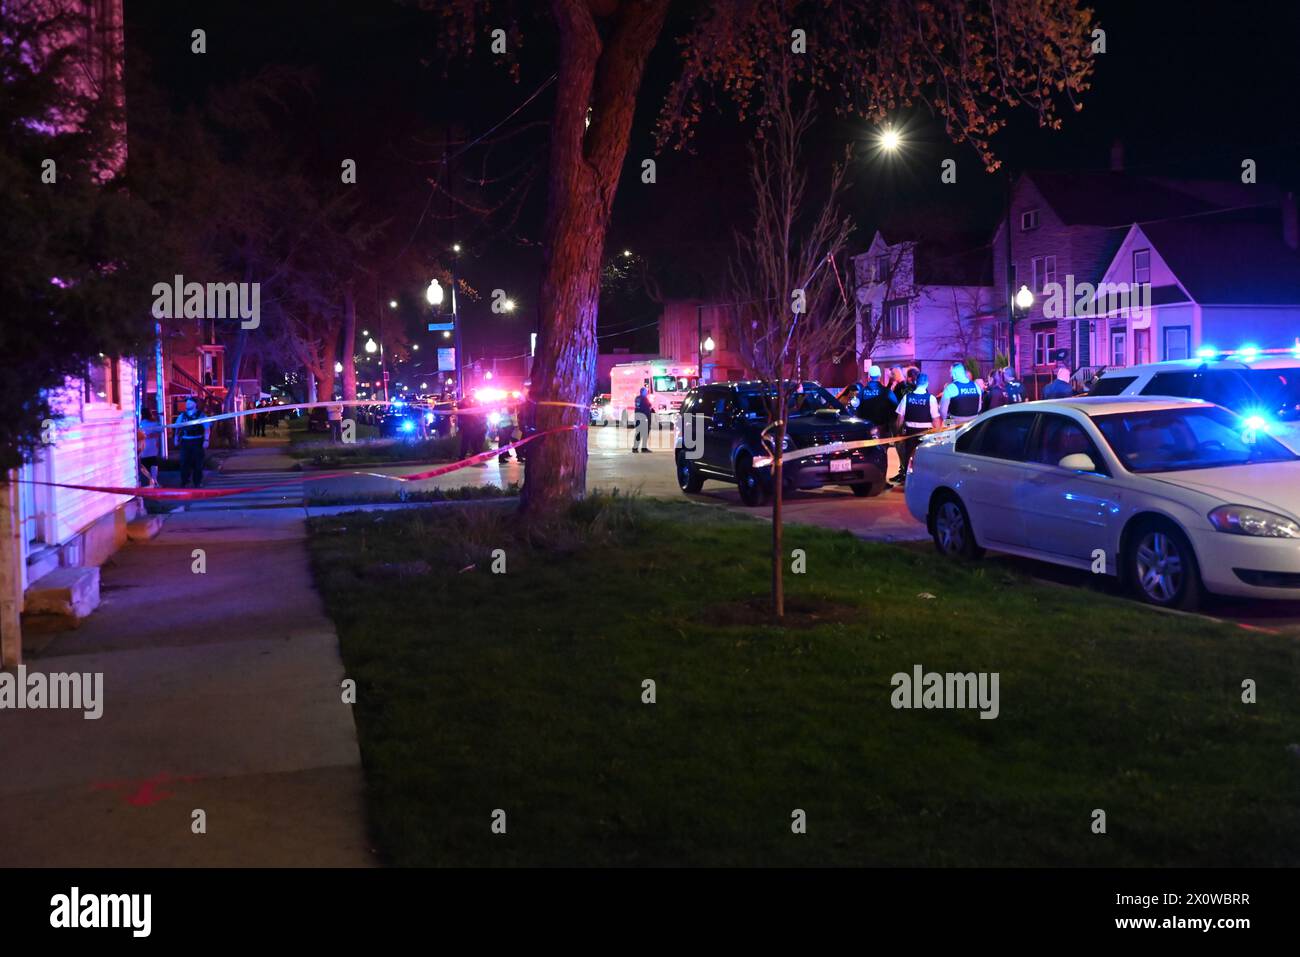 La policía de Chicago se apresura a la escena de un tiroteo masivo en el área de West 52nd Street. Ocho personas fueron baleadas, incluyendo cinco adultos y tres niños en el área de West 52nd Street en Chicago. Los adultos a los que se les disparó varían en edad de 19 a 40 años de edad. Un hispano de 1 año recibió múltiples disparos y se encuentra en estado crítico, un hispano de 7 años recibió múltiples disparos y se encuentra en estado crítico, una hispana de 7 años recibió un disparo en la cabeza y fue declarada muerta. Ningún sospechoso está detenido en este momento y el tiroteo parece estar relacionado con pandillas. Foto de stock